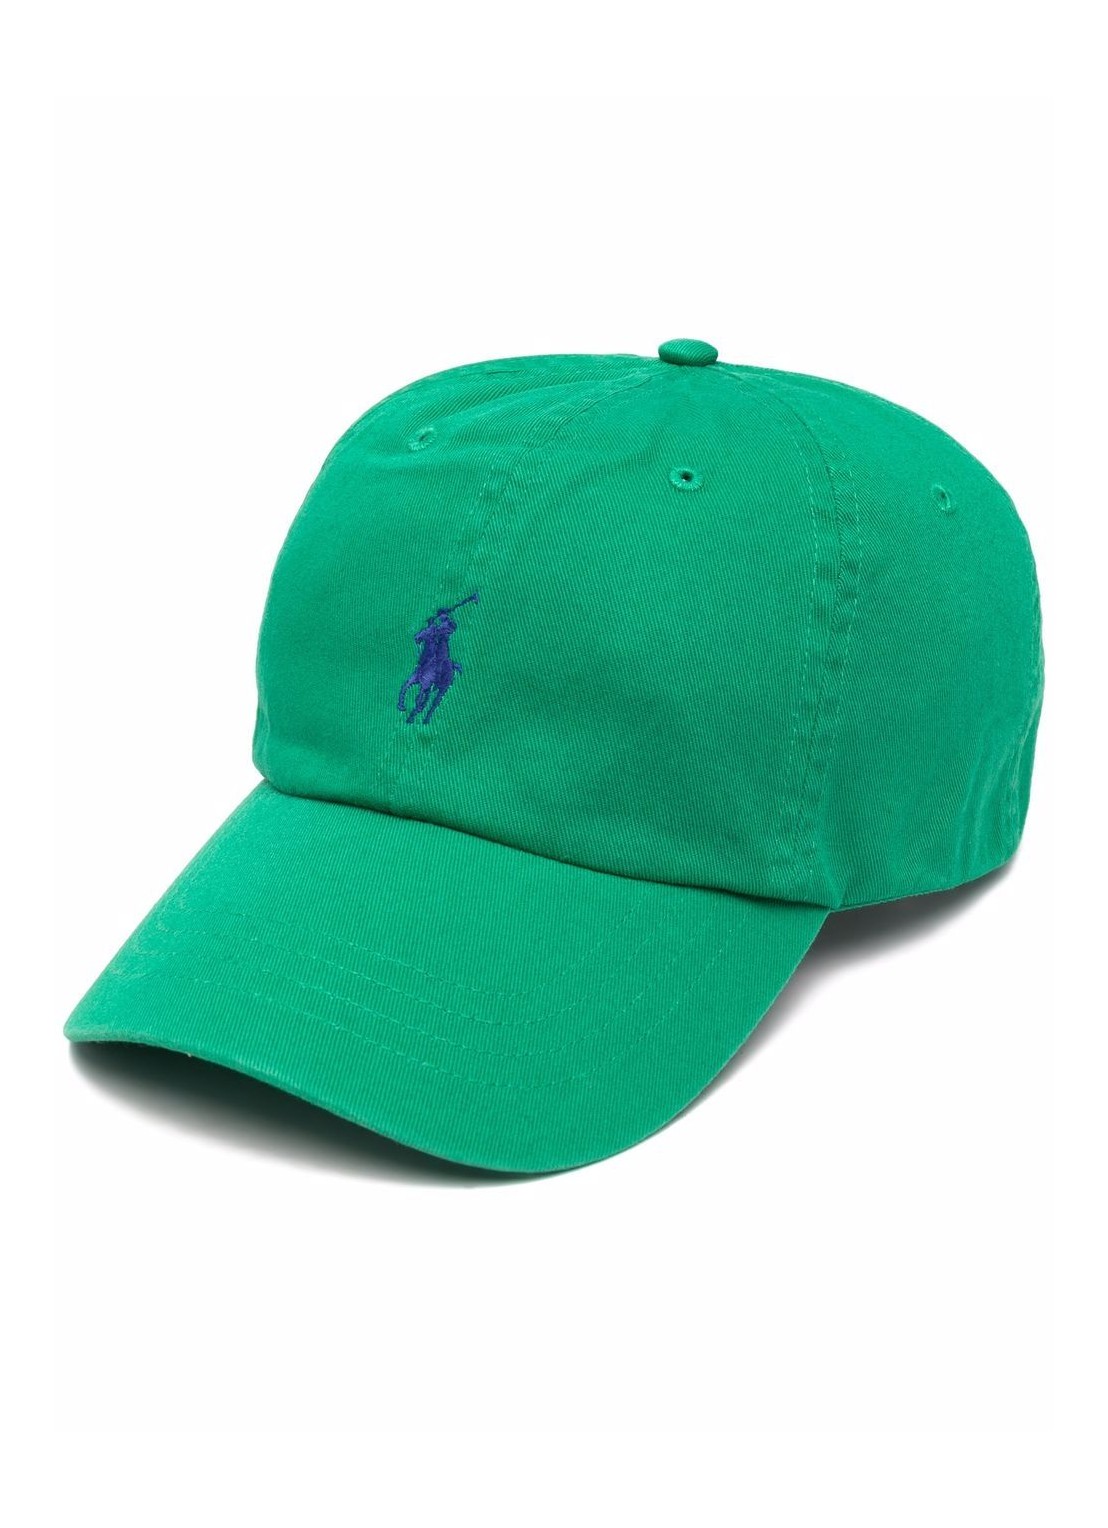 Gorras polo ralph lauren cap man cls sprt cap-hat 710667709081 billard green talla verde
 